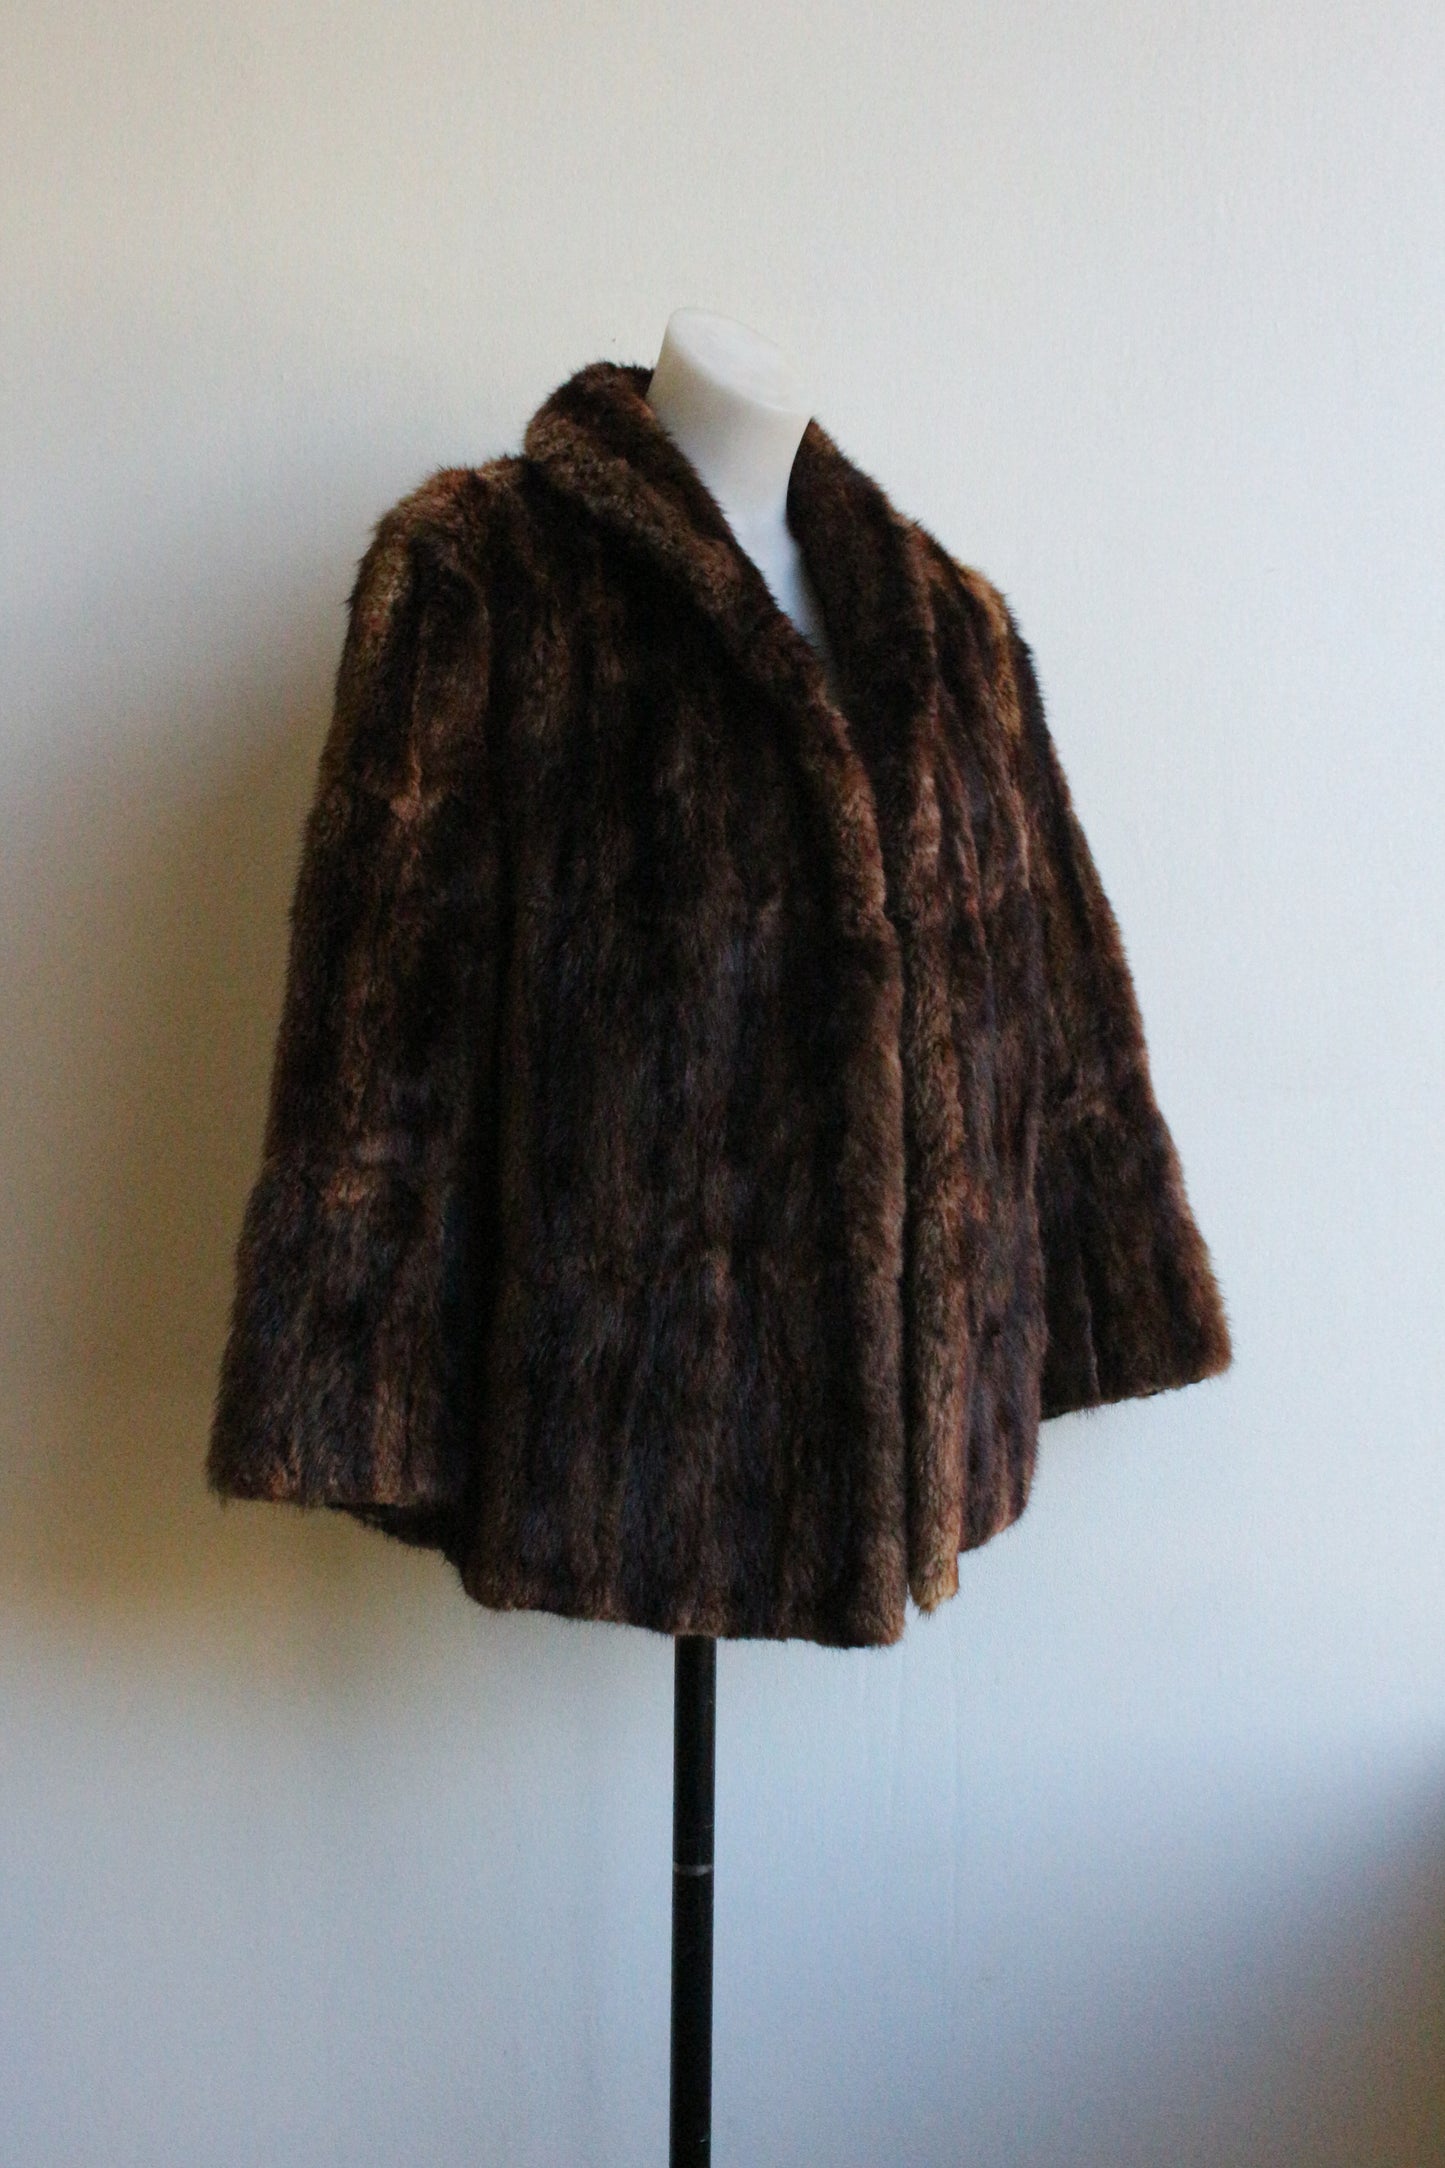 Brown fur jacket